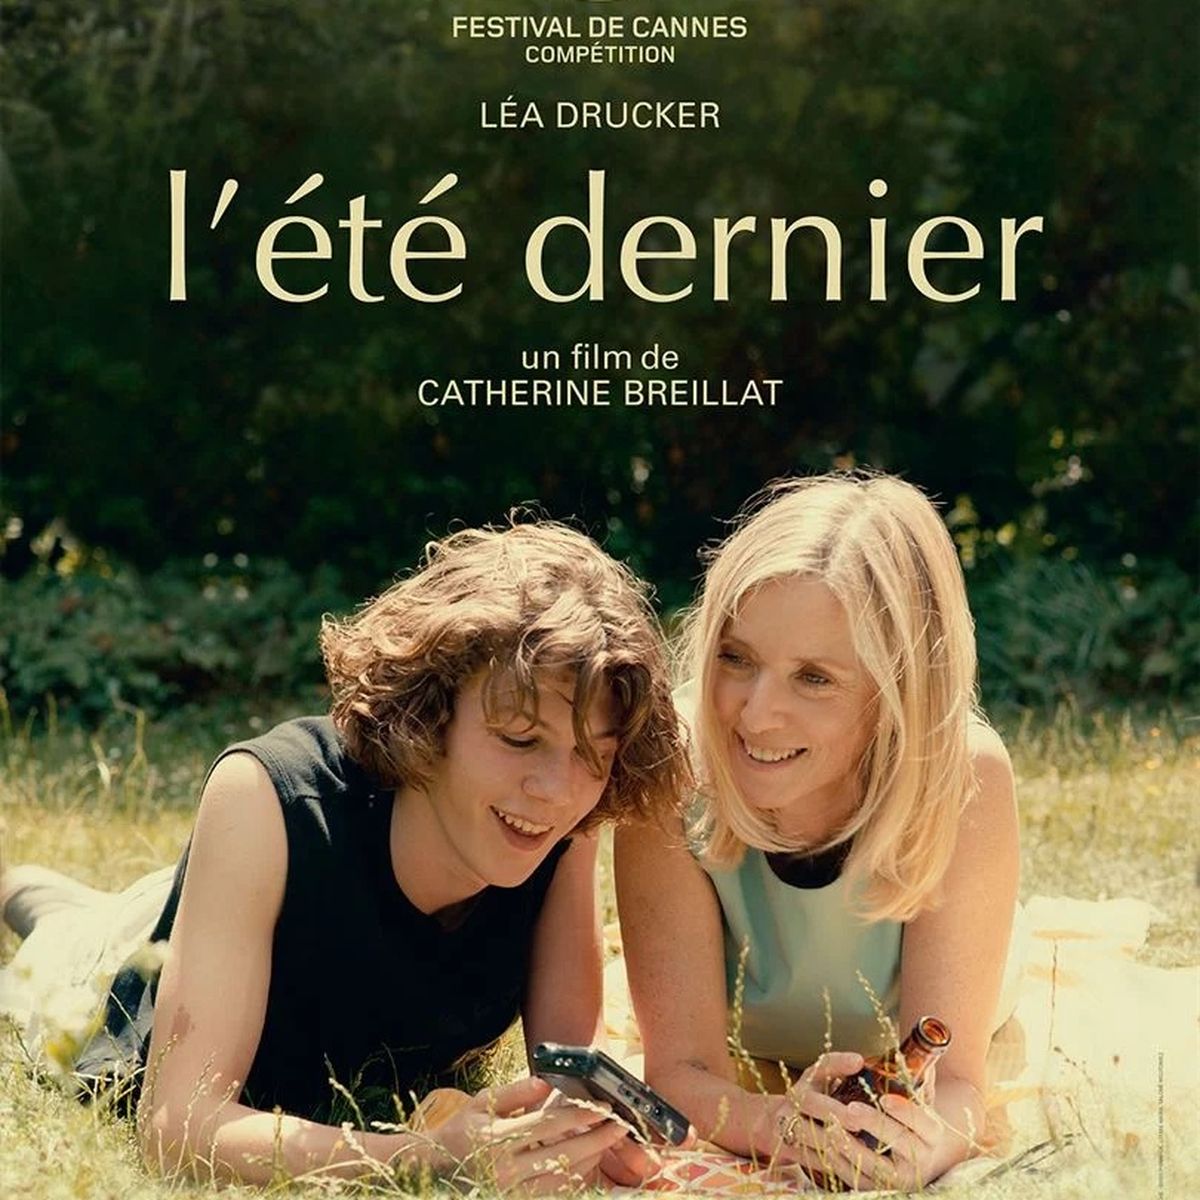 L’Été dernier (104’) - Film français de Catherine Breillat